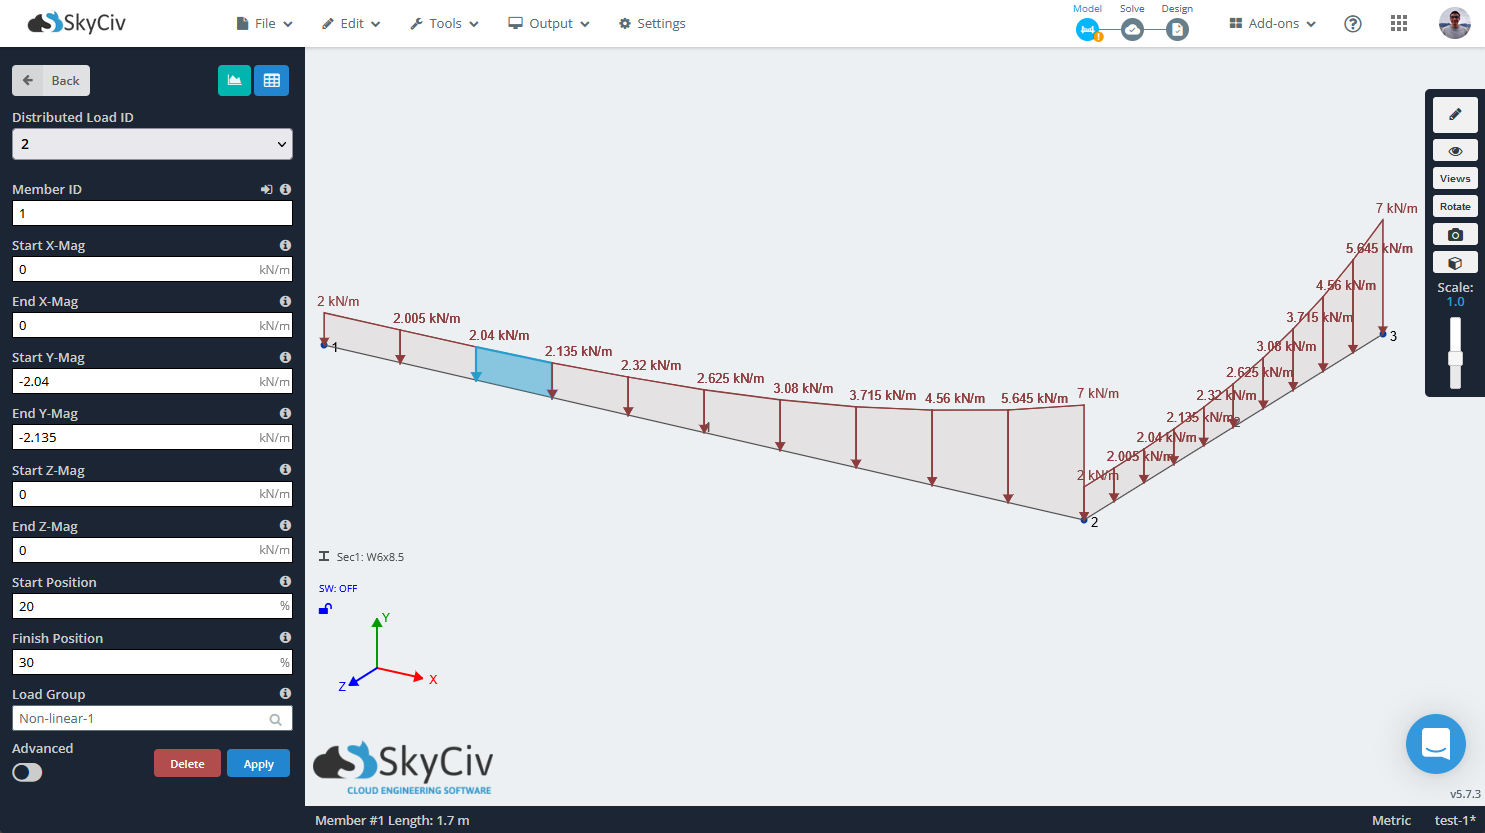 SkyCiv S3D mostrando uma carga distribuída não linear ou definida por equação